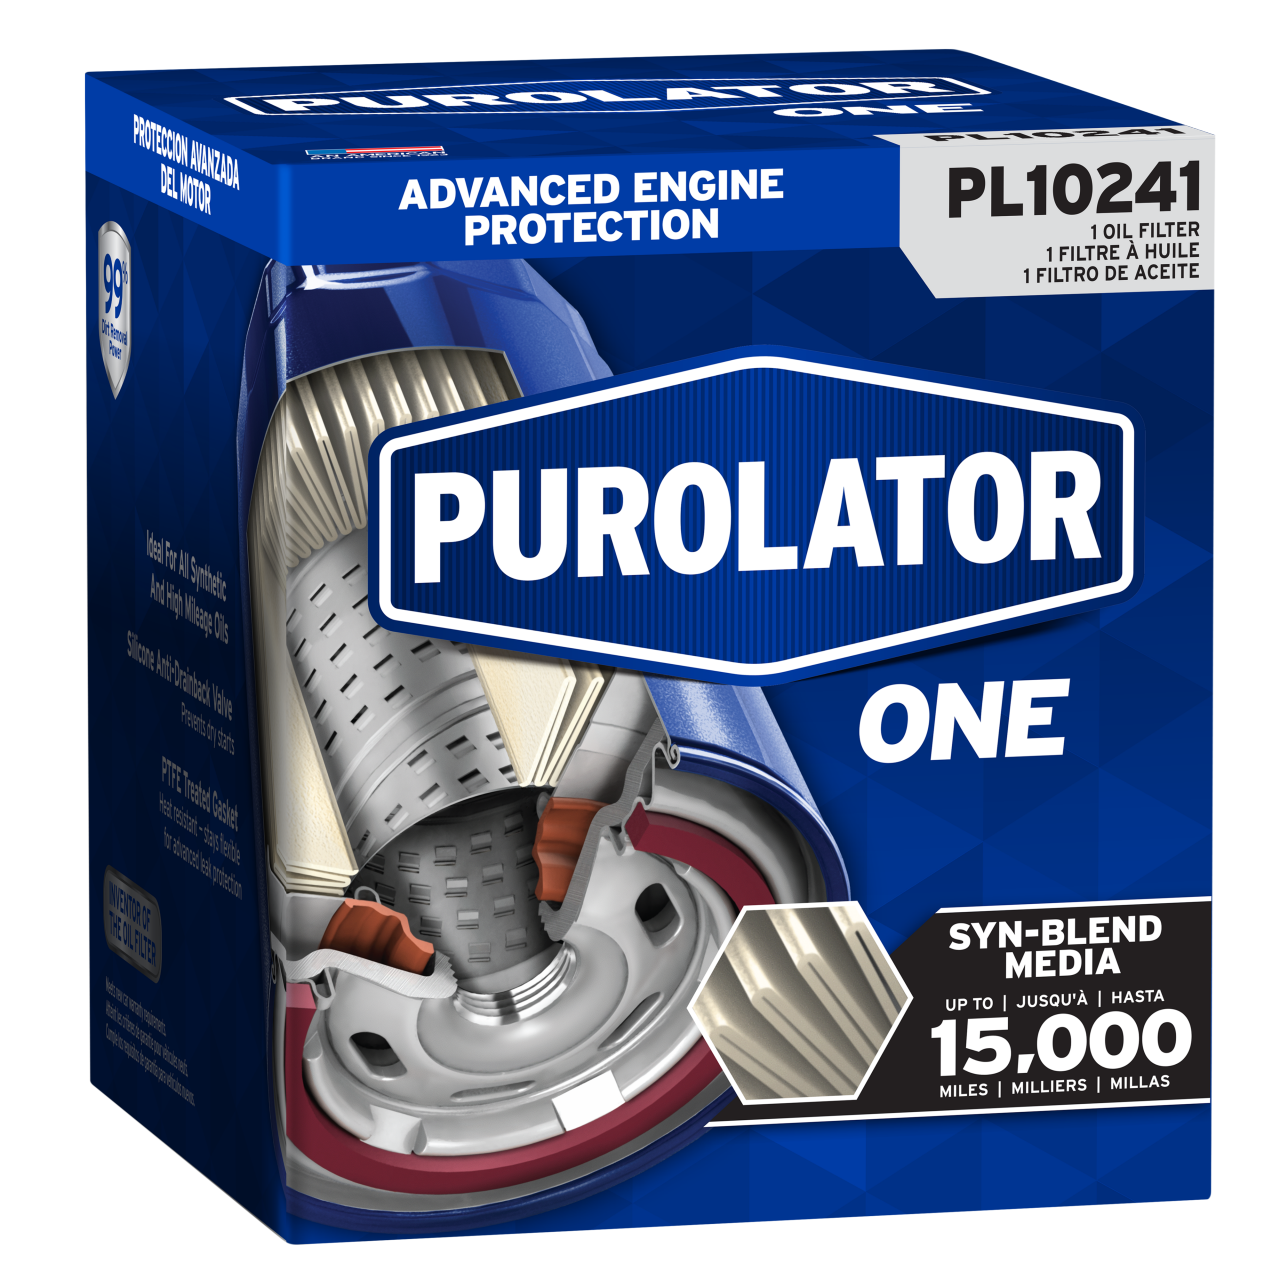 Para el próximo cambio de aceite, recuerde que los filtros de aceite PurolatorONE™ ofrecen hasta 15.000 millas de protección avanzada del motor.